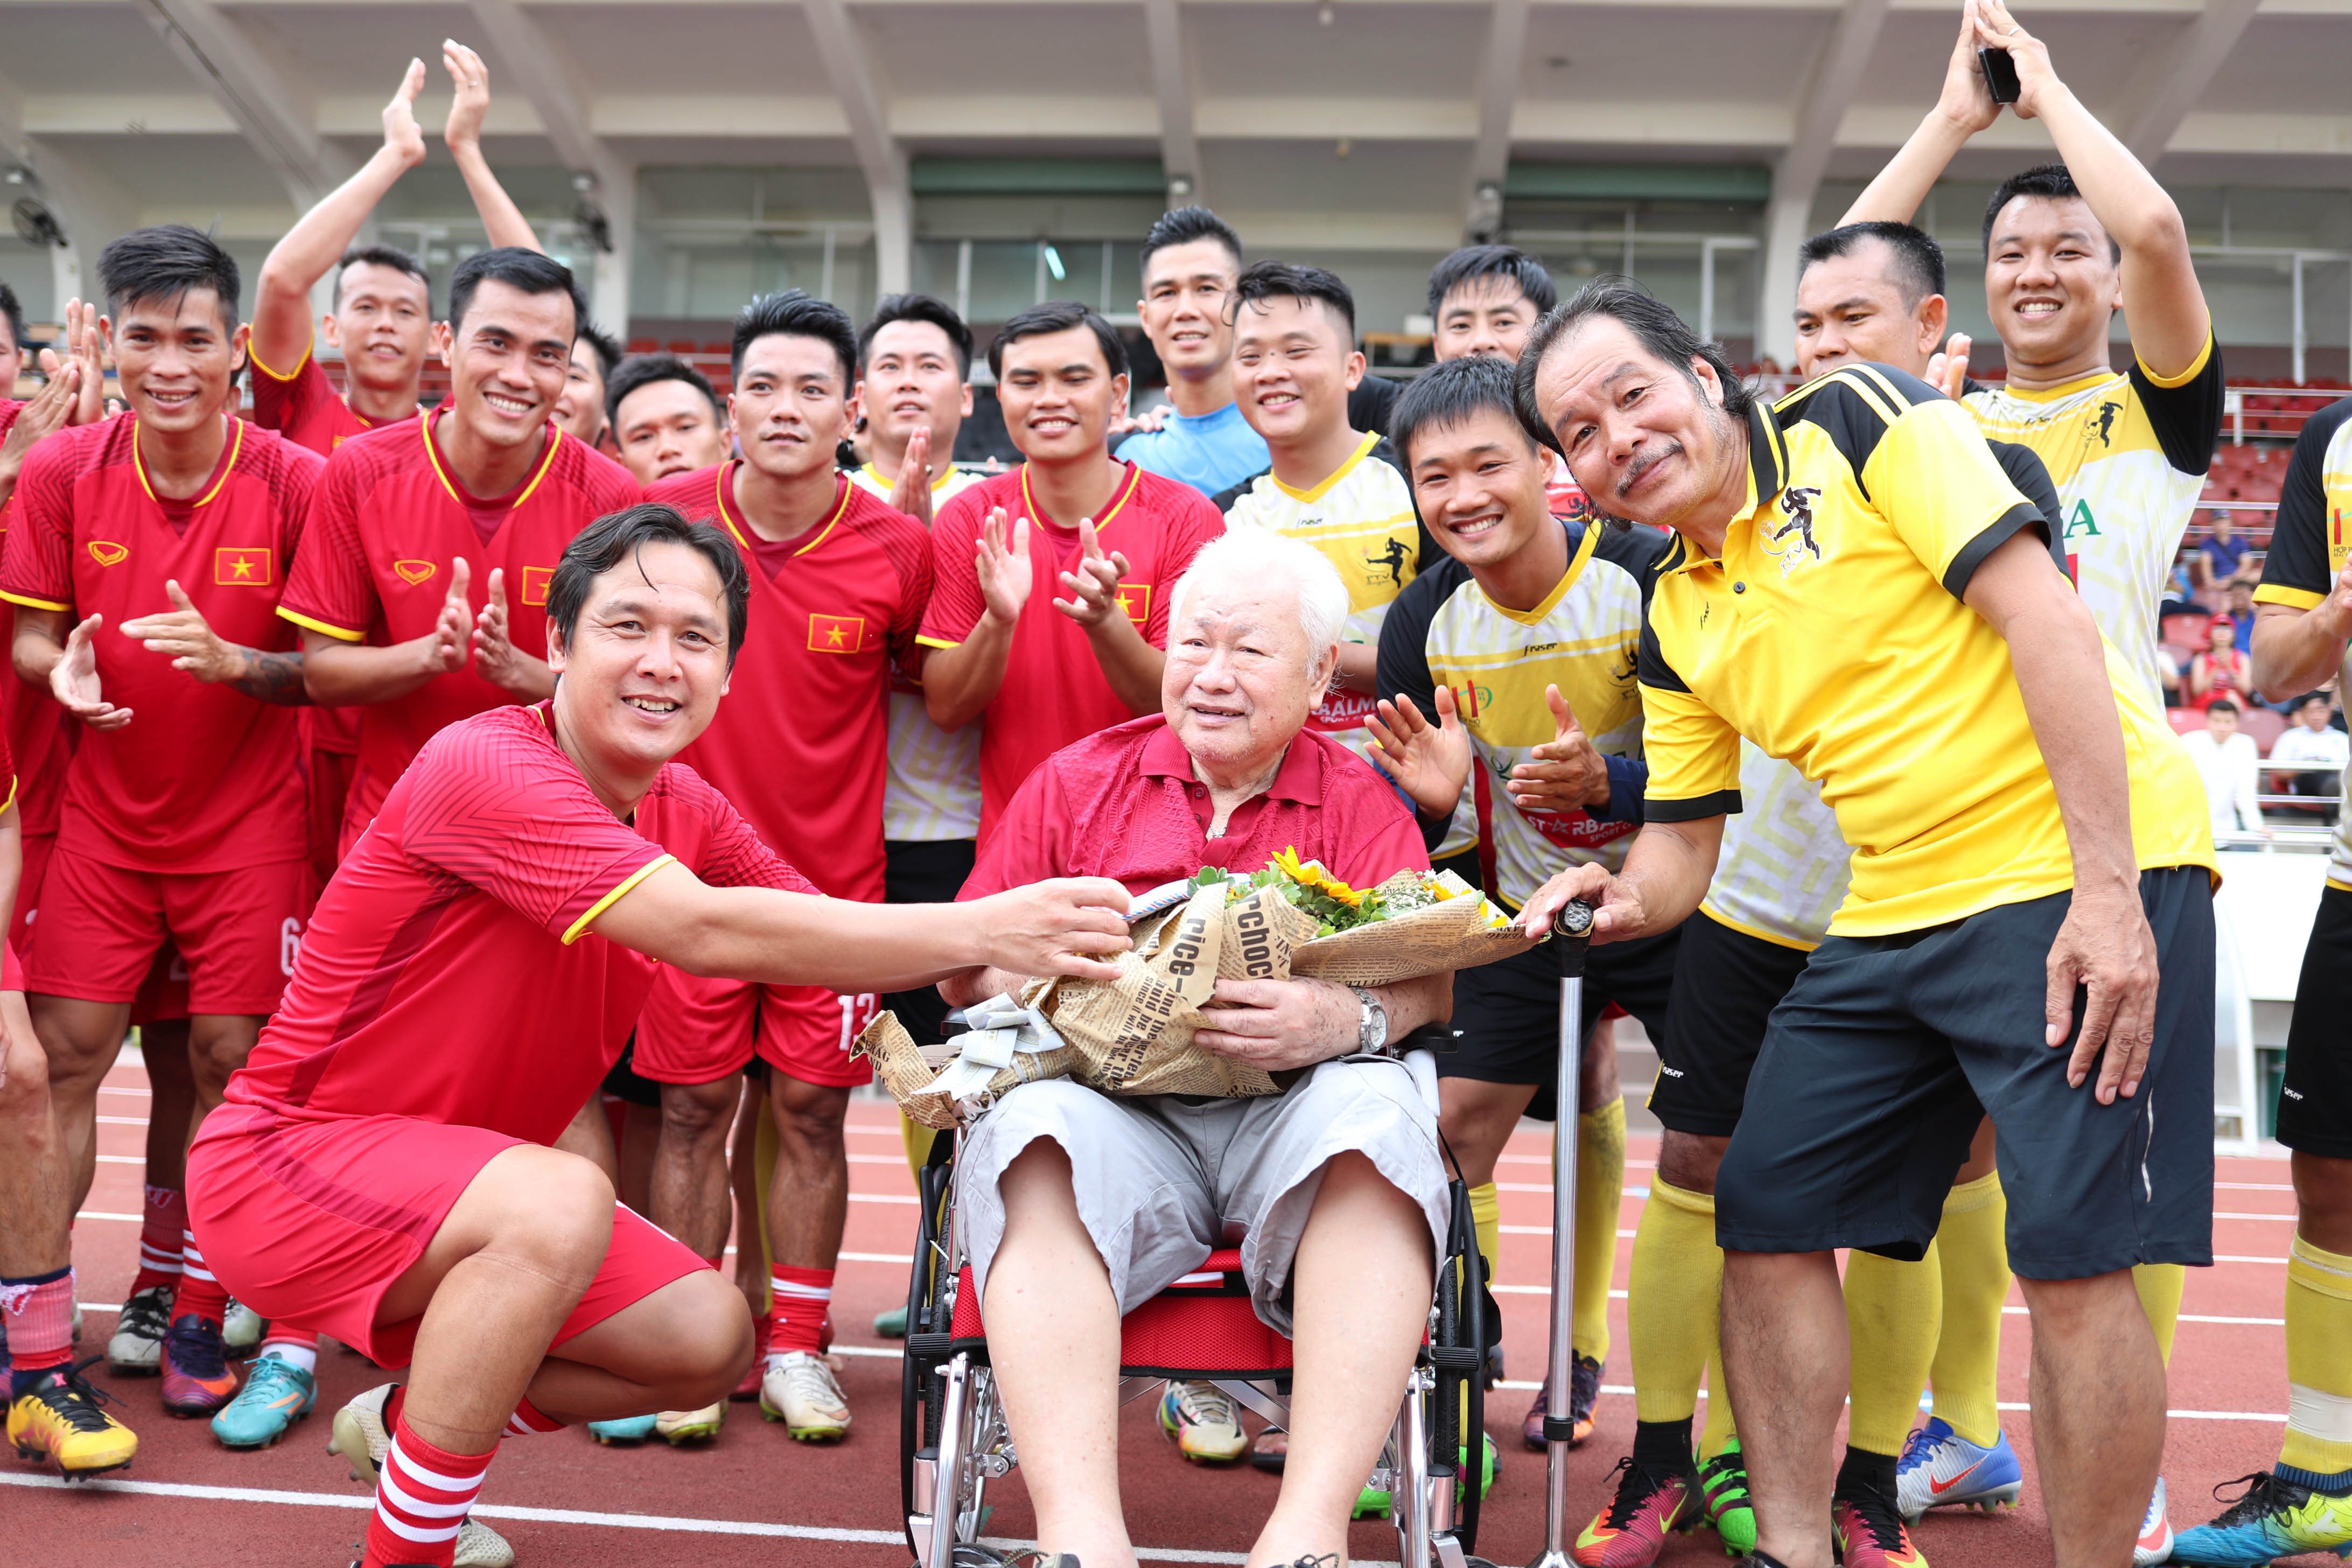 Trước đó, các cựu danh thủ đã cùng nhau thi đấu giao lưu với đội PTV Saigon (các phóng viên thể thao ở TP HCM). 2 đội quyên góp được gần 13 triệu đồng để ủng hộ cựu tuyển thủ Đỗ Minh Khá đang gặp khó khăn và bệnh tật. (Nguồn: VnExpress.net)